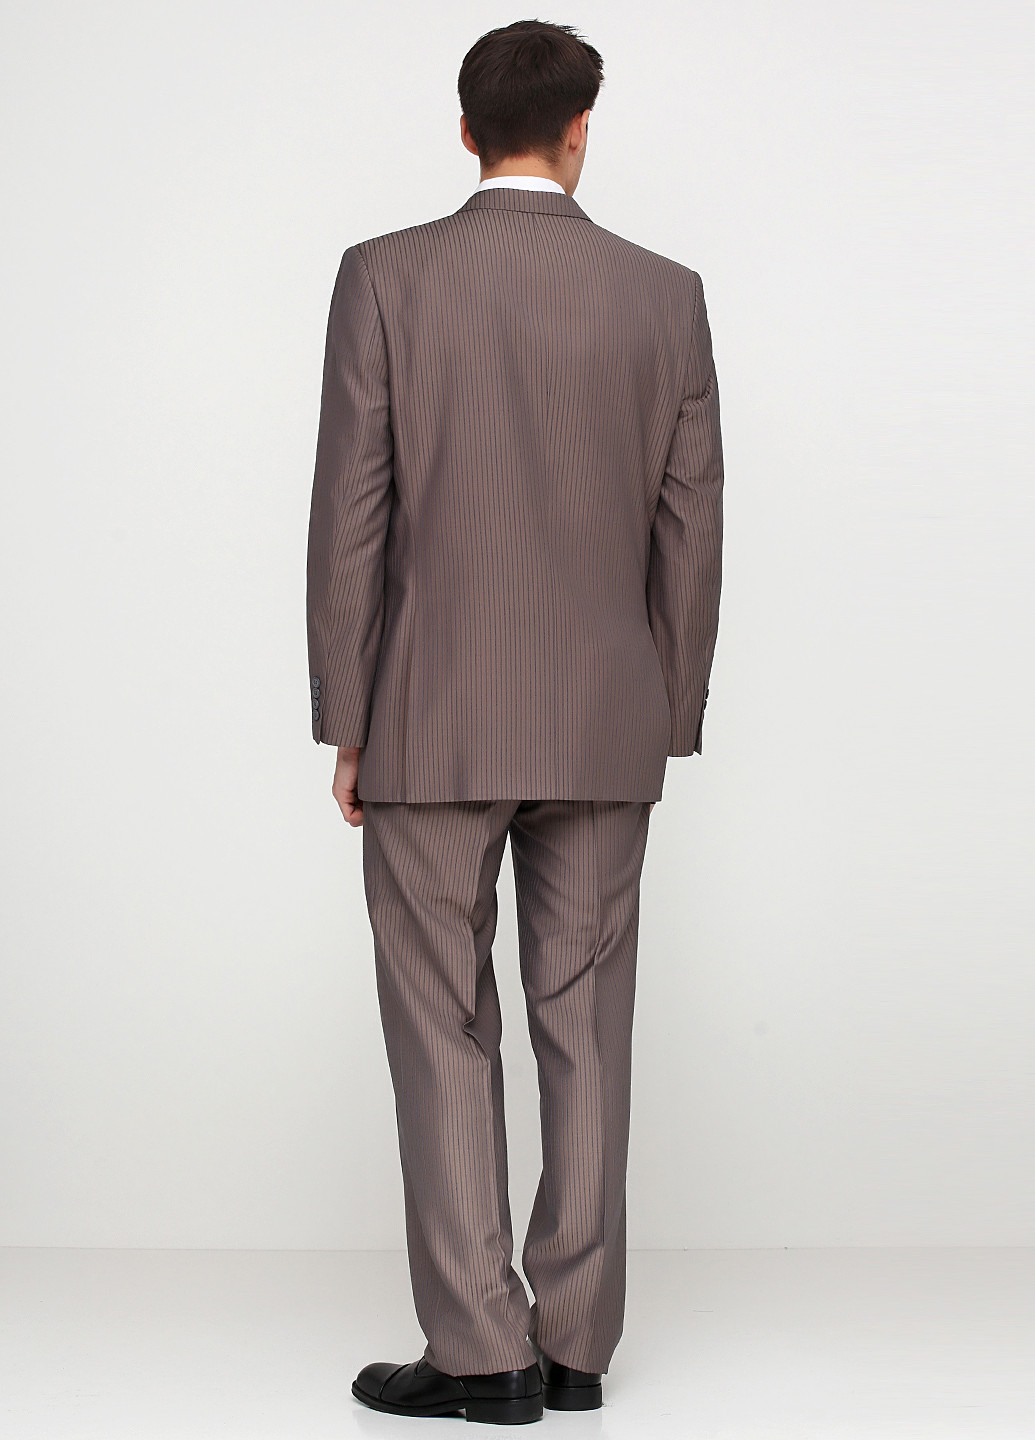 Бледно-коричневый демисезонный костюм (пиджак, брюки) брючный Maestro Bravo